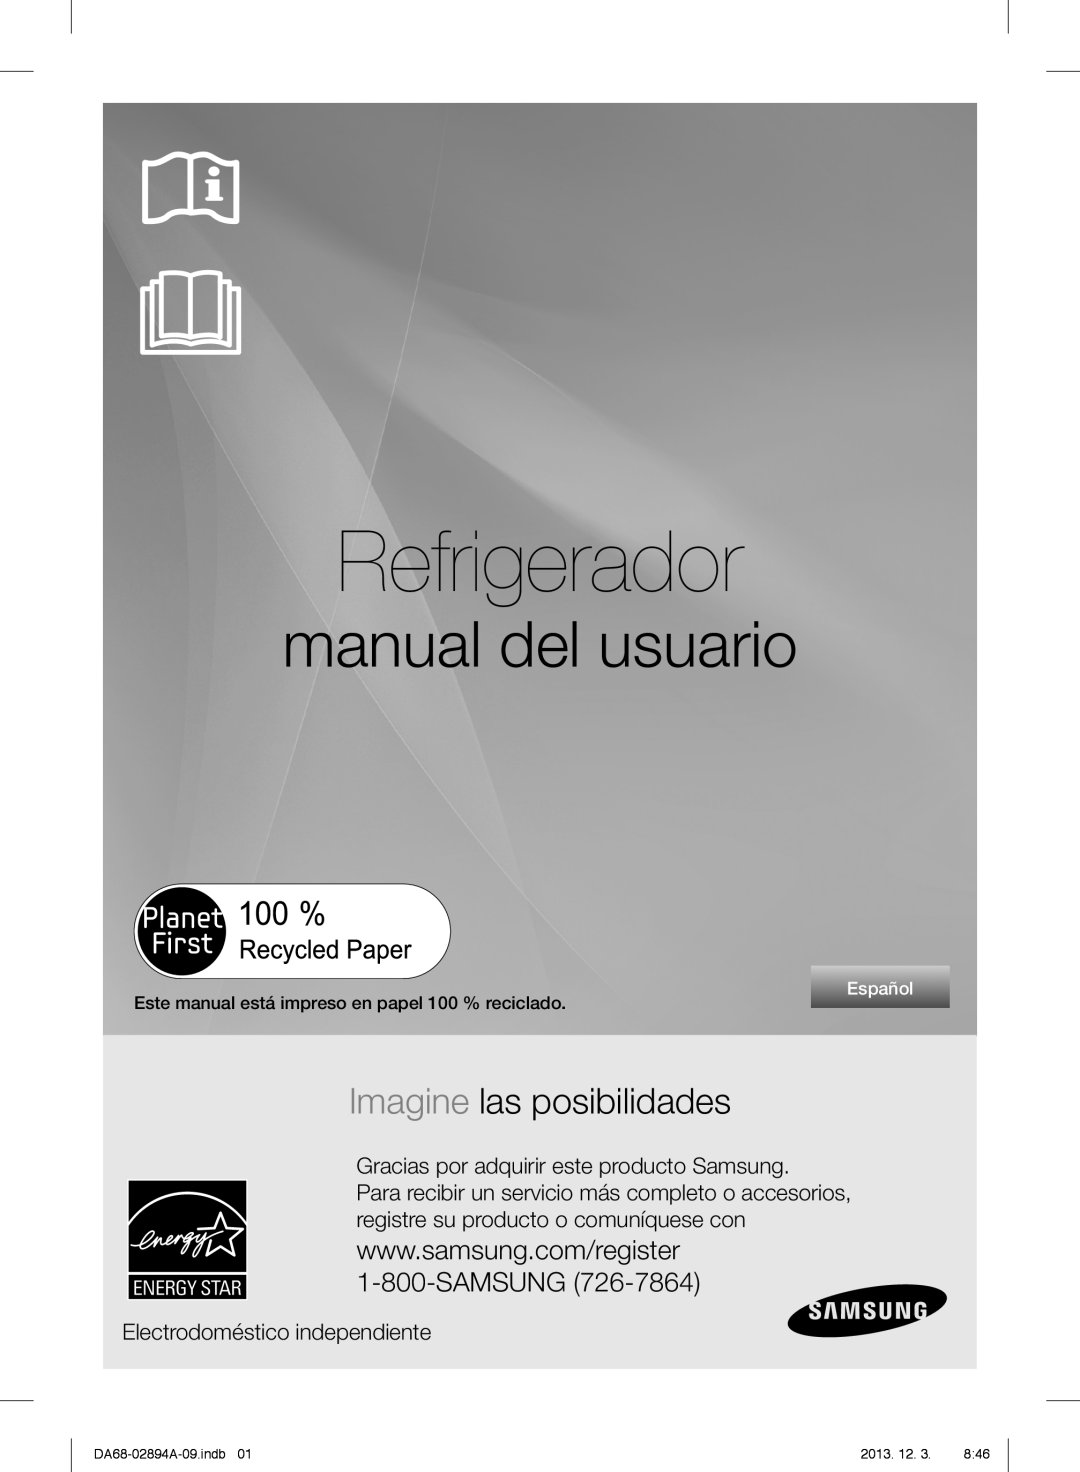 Samsung RF31FMEDBBC Refrigerador, manual del usuario, Imagine las posibilidades, Electrodoméstico independiente, Español 